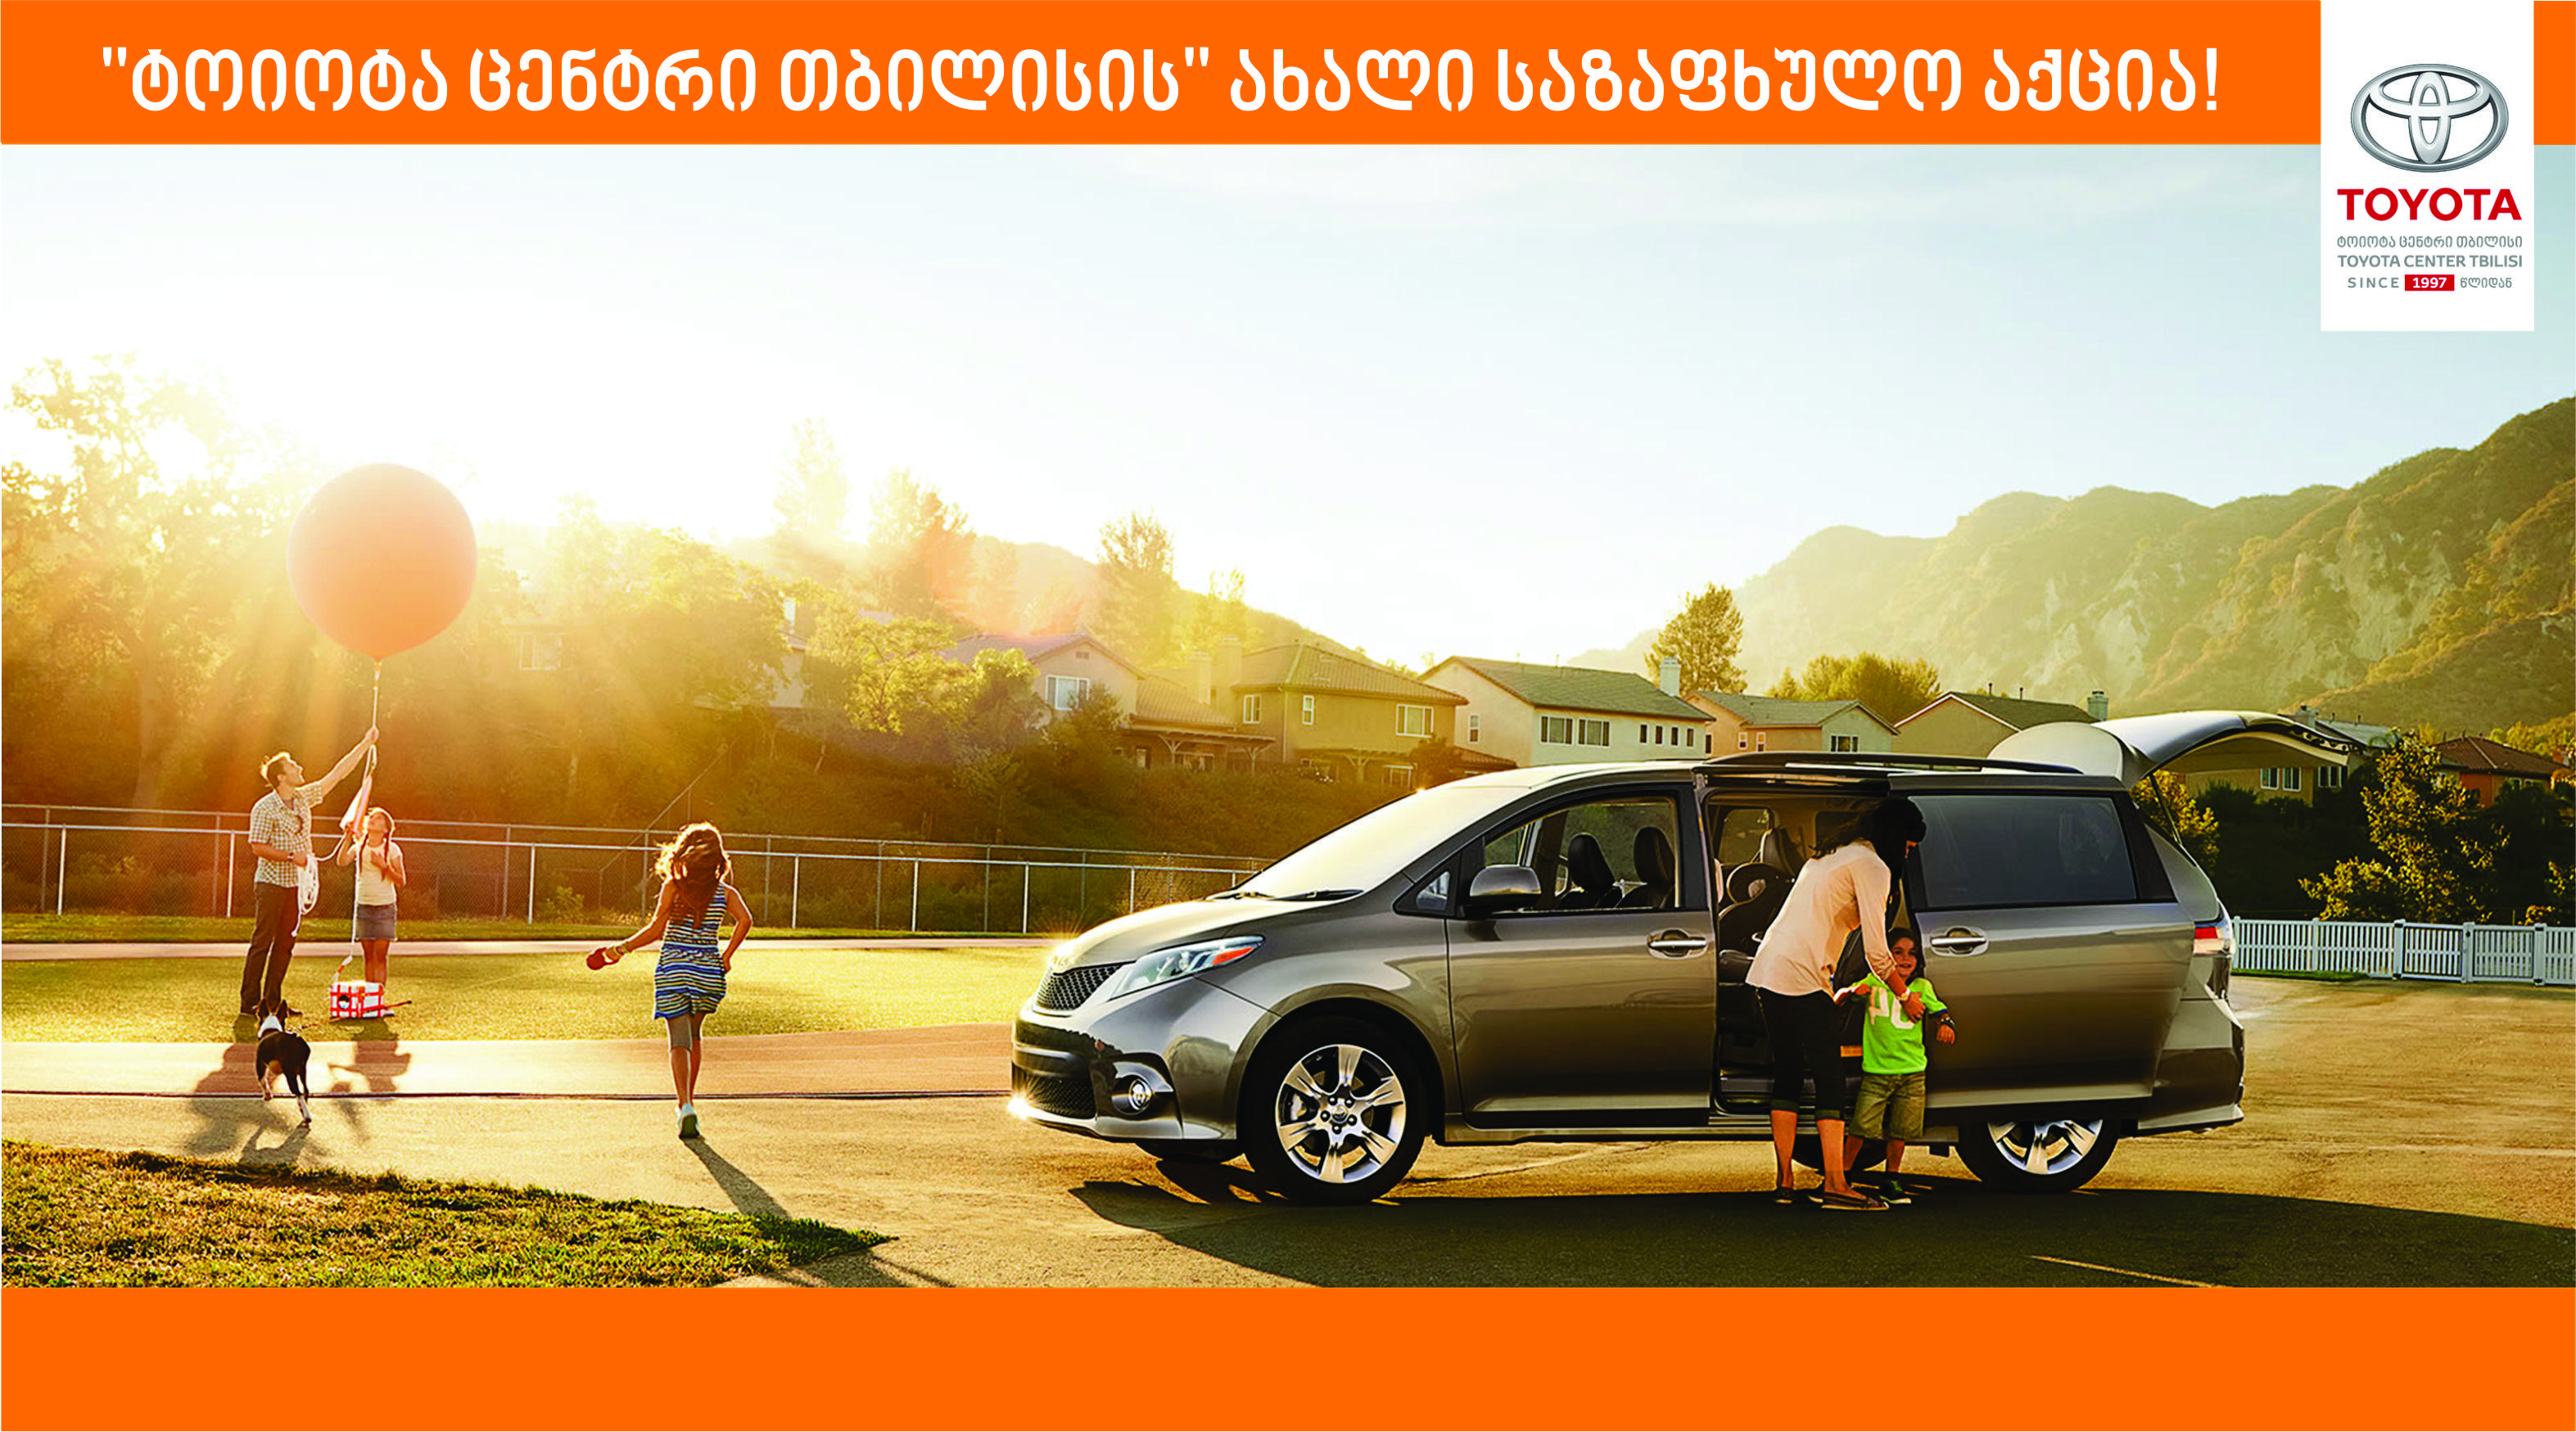 Первый семейный автомобиль: Госпрограмма Семейный автомобиль, купить новый семейный автомобиль по специальной программе в автосалоне официального дилера Автомир